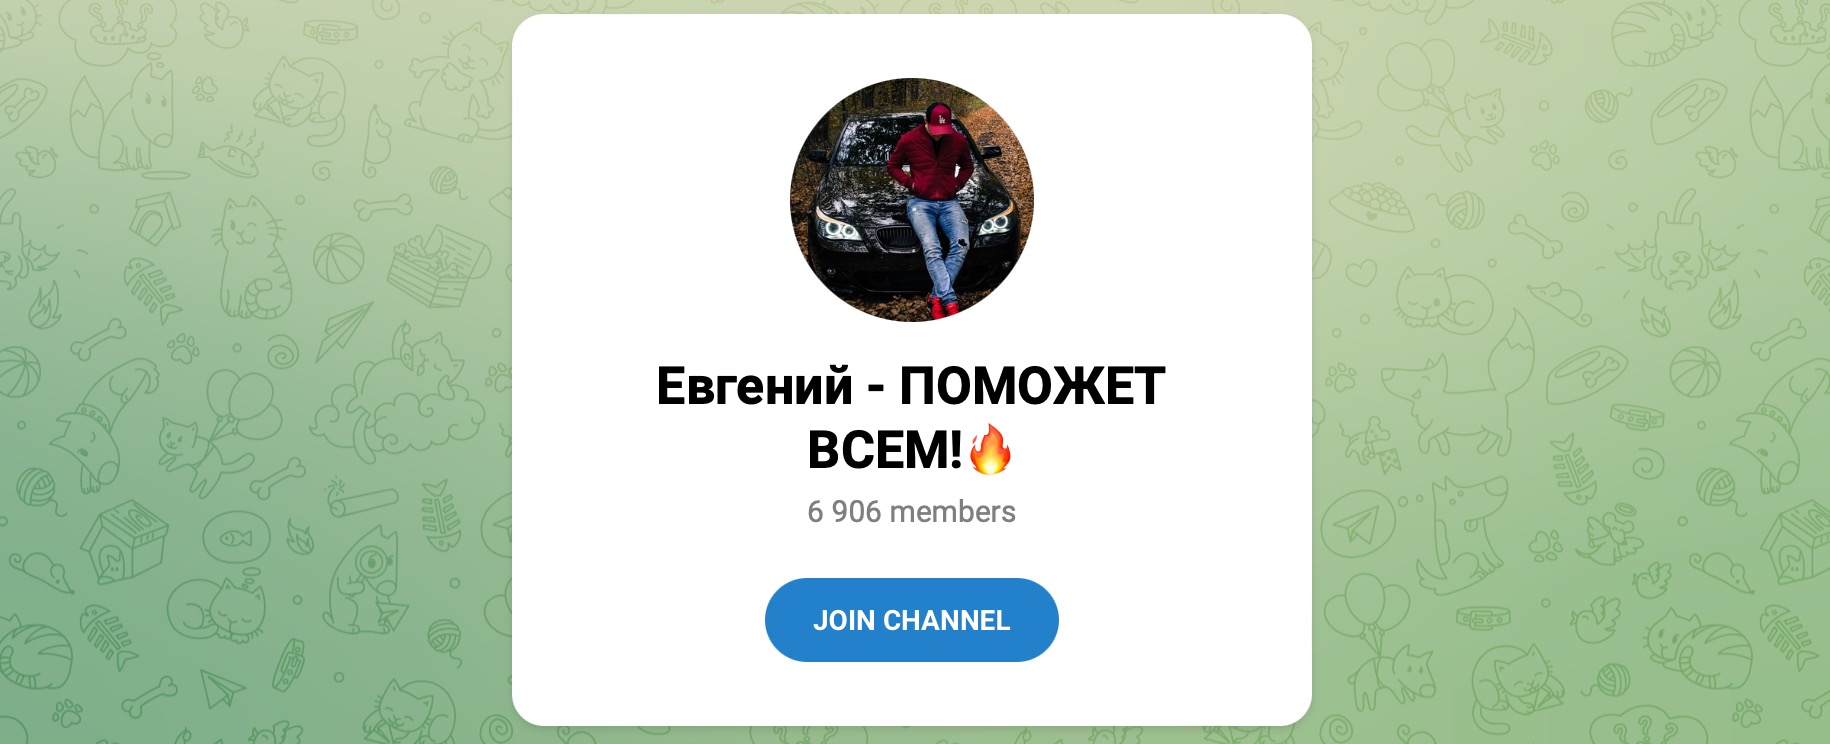 Внешний вид телеграм канала Евгений - ПОМОЖЕТ ВСЕМ!?